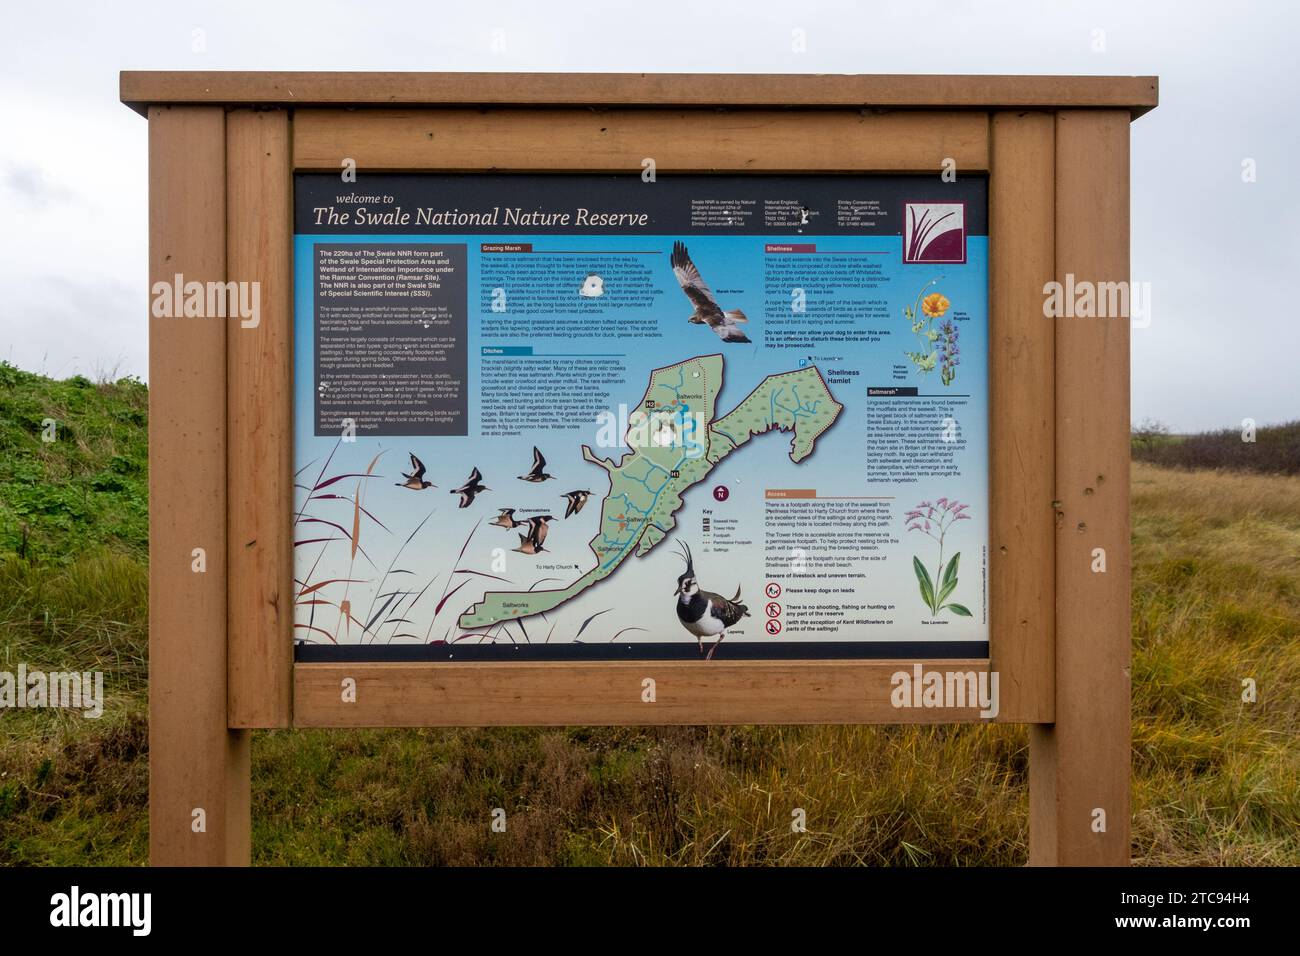 Bienvenue sur le panneau de réserve naturelle nationale de Swale, panneau d'information sur le site de la faune côtière sur l'île de Sheppey, Kent, Angleterre, Royaume-Uni Banque D'Images